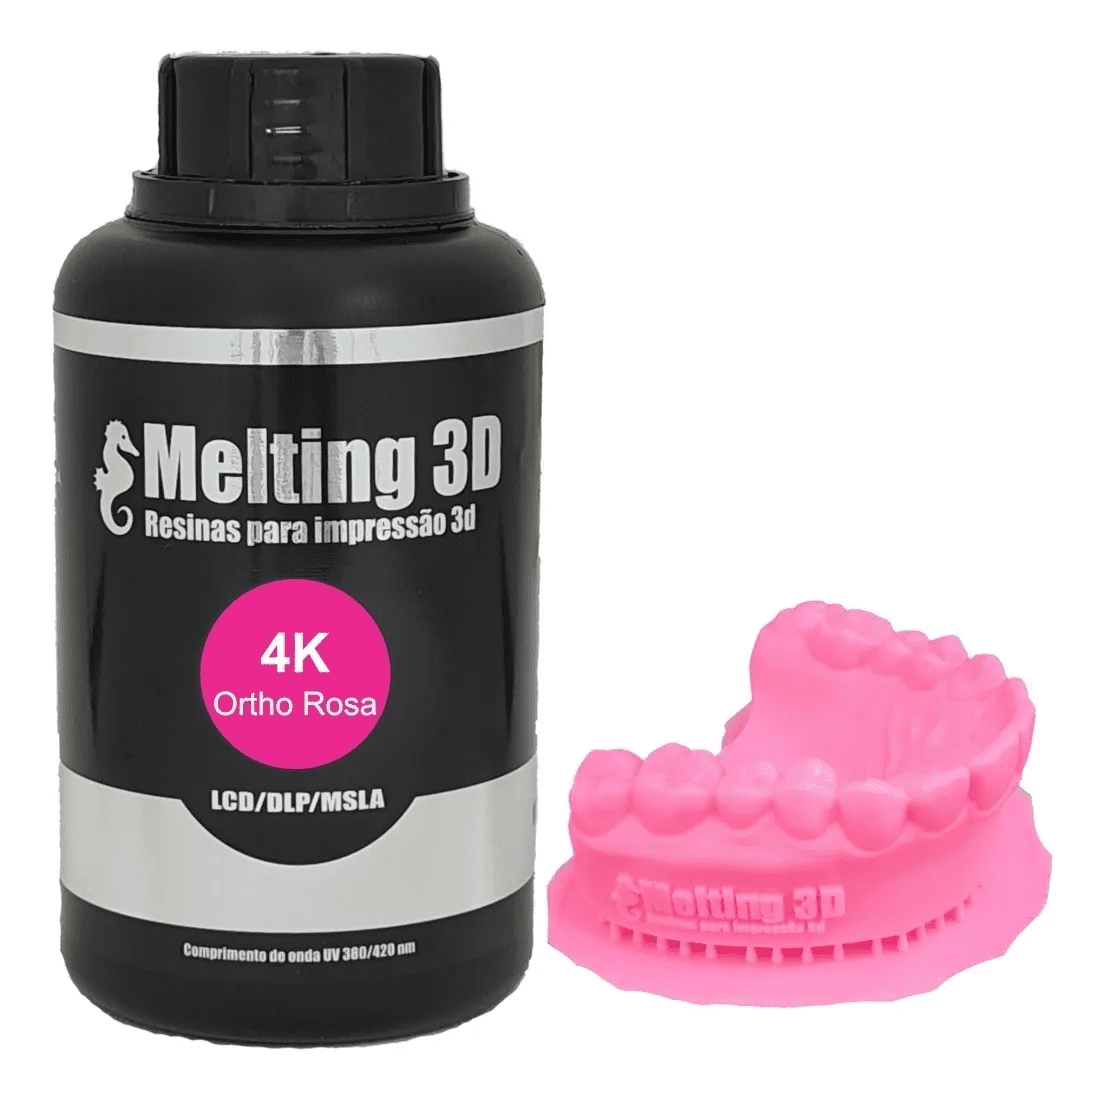 Resina Melting 3D - Ortho Rosa - 4K - LCD/SLA/DLP - 380/420nm - 500 ml